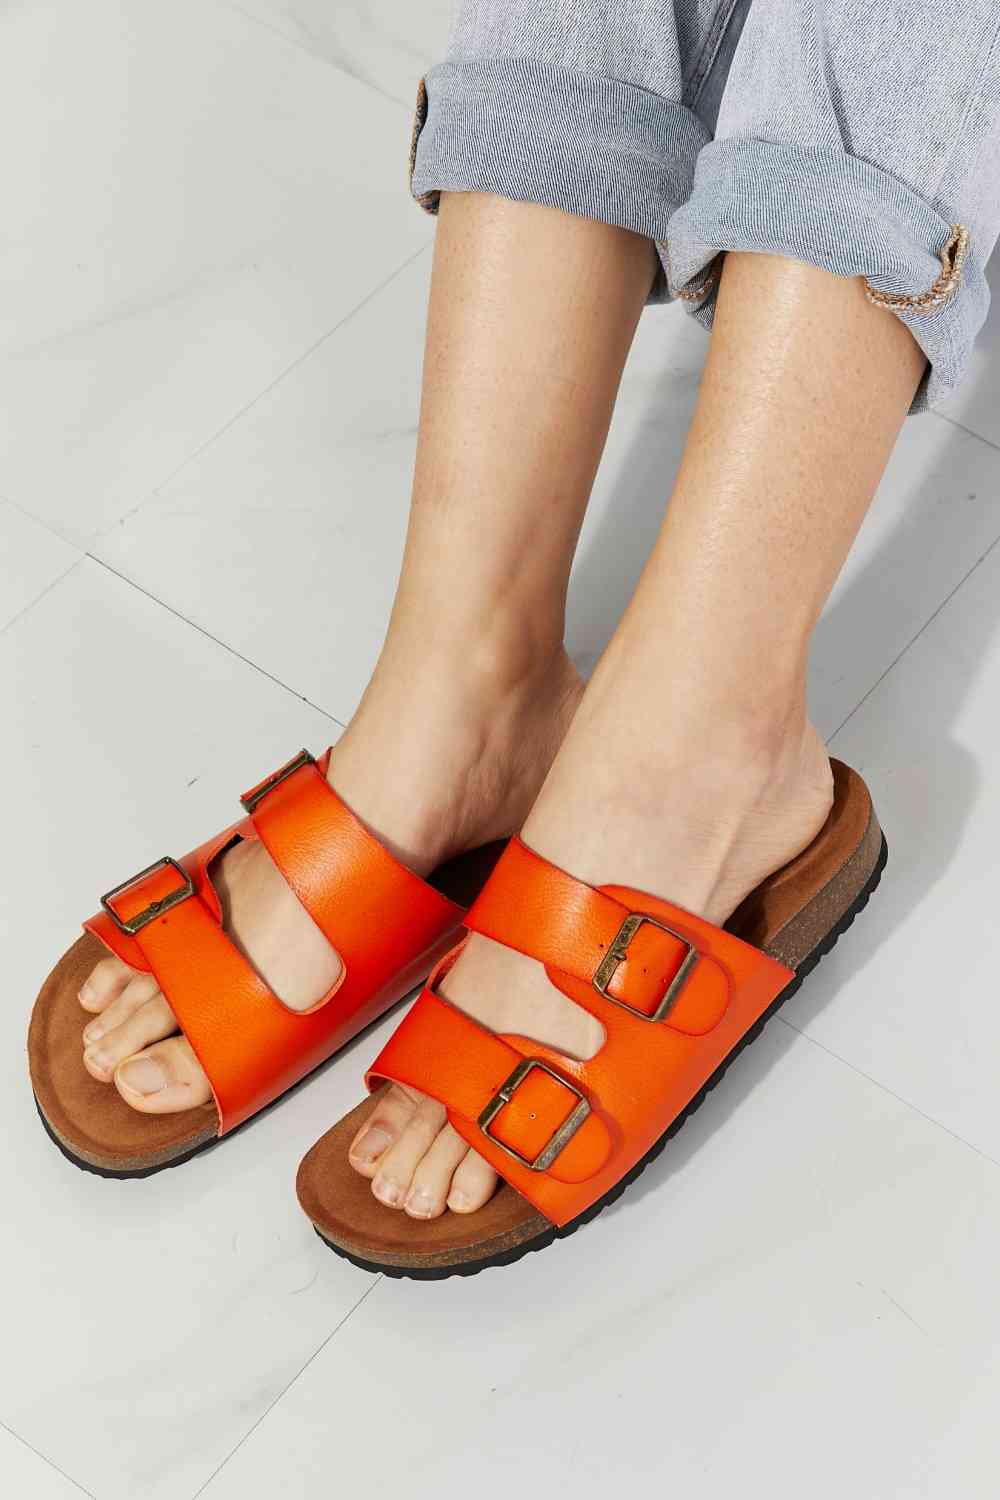 MMShoes Feeling Alive Double Banded Slide Sandals in Orange - BloomBliss.com